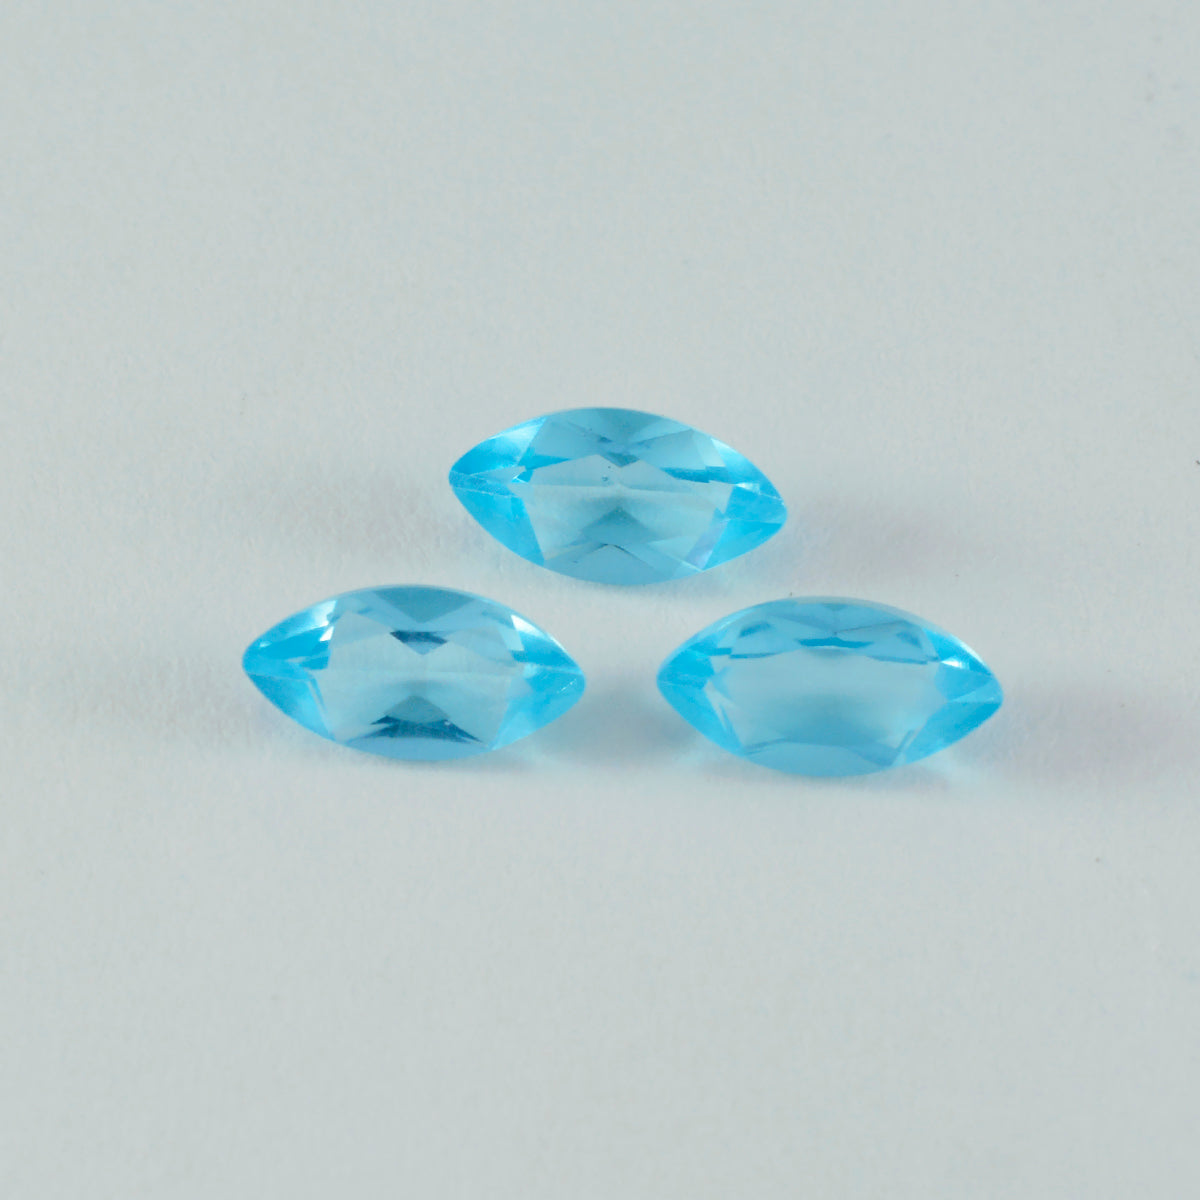 riyogems 1шт голубой топаз cz ограненный 8x16 мм форма маркиза качество aa свободный драгоценный камень